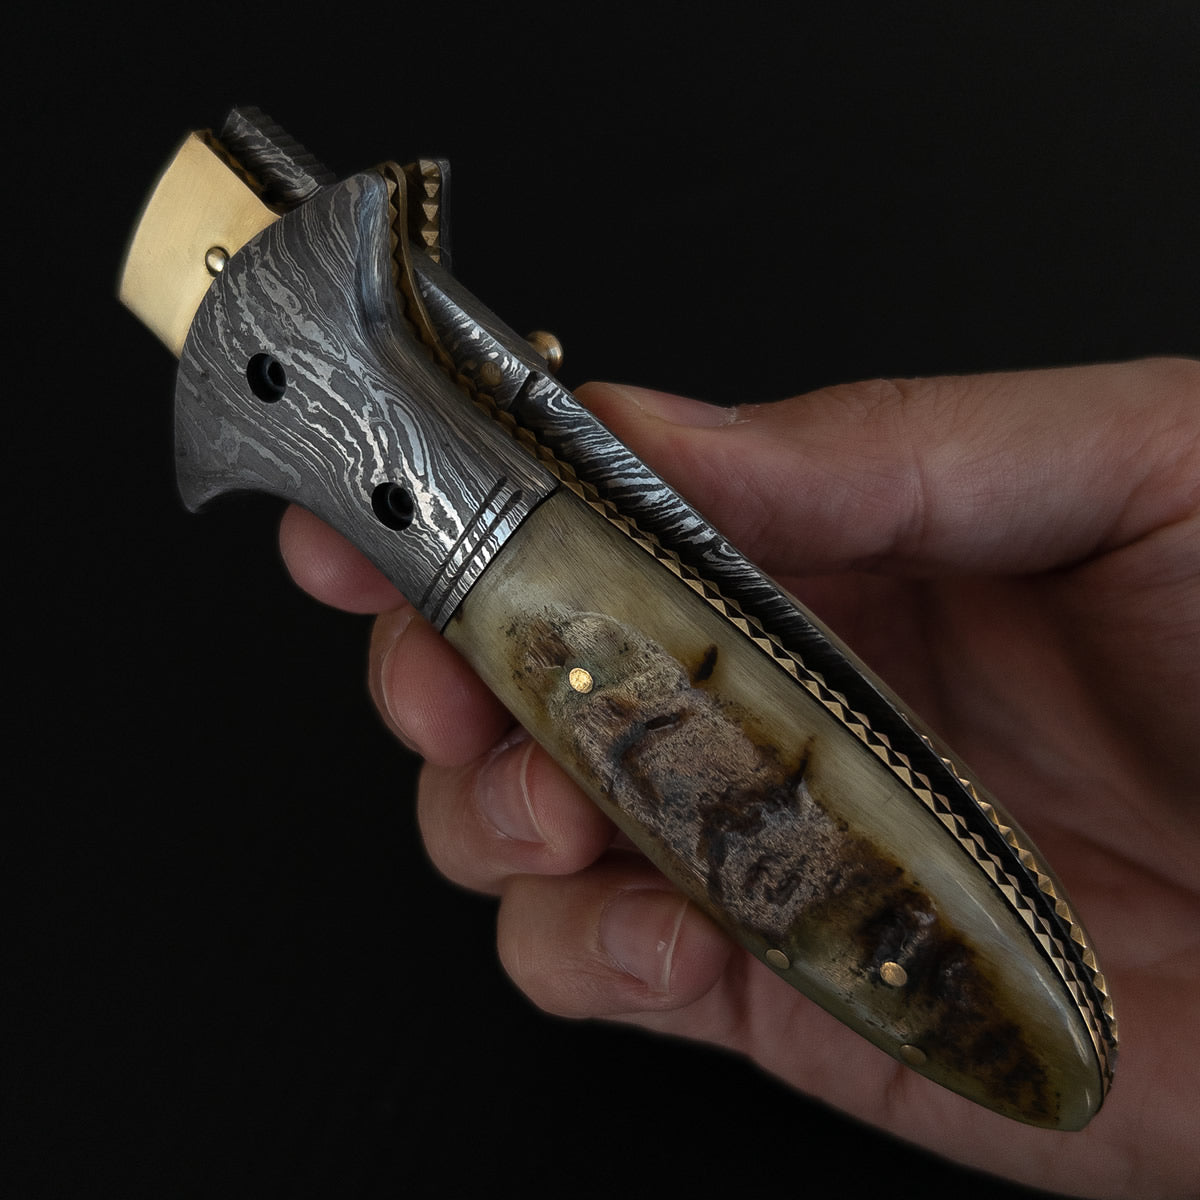 Lindo canivete artesanal com lâmina em aço damasco.